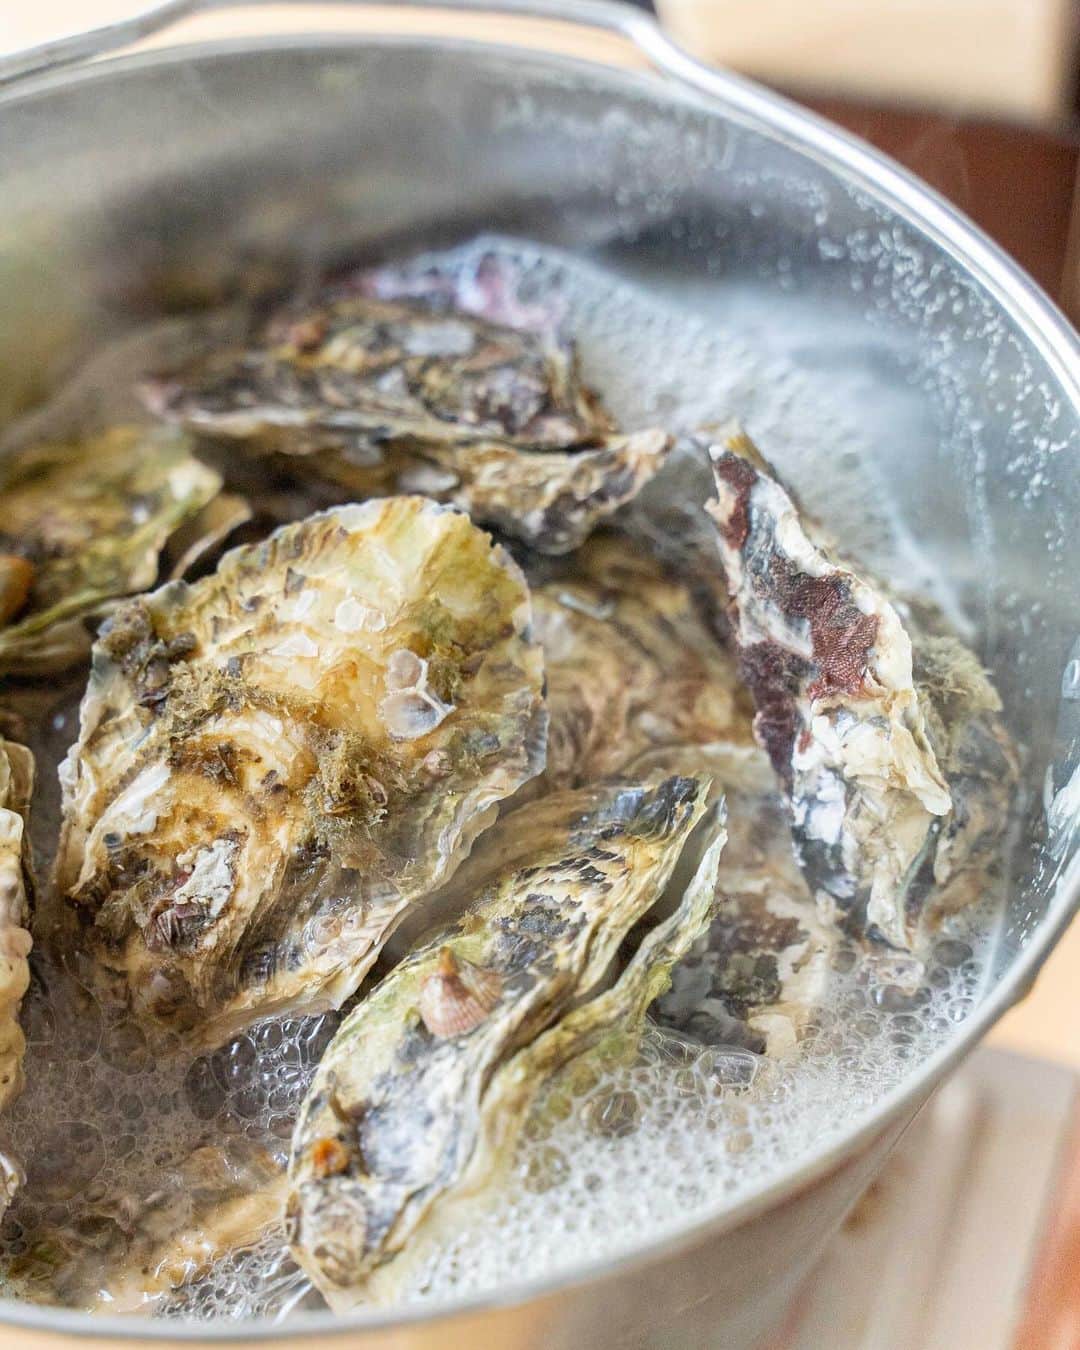 ナゴレコさんのインスタグラム写真 - (ナゴレコInstagram)「＼蒸したての牡蠣が食べ放題！？牡蠣がメインの居酒屋でいただくコスパ最強の食べ放題コース🌊💕／ ⁡ 千種駅のすぐそばに新鮮な牡蠣が気軽に食べられる海鮮系居酒屋があるのをご存知ですか？ ⁡ 三陸の漁港で獲れた牡蠣はどれも味が大きくてプリップリ✨ 今回は、そんな鮮度抜群の美味しい牡蠣を“バケツいっぱい”食べられる夢のような食べ放題コースをご紹介🥢 ⁡ そして、コース利用者限定で超お得なサービスも実施されているのだとか...とっても気になります👀 それでは、さっそく紹介していきます✊ ⁡ ⁡ 👉 @kakiya_chikusa ⁡ ⁡ 今回ご紹介するのは、地下鉄東山線・JR線 千種駅から徒歩3分ほどの場所にある海鮮系居酒屋「浜焼きdiningカキヤ 千種店」さん🏮 こちらのお店は牡蠣の産地直送を行っている、オンラインショップ「松かき」さんが手がける海鮮居酒屋🌊 ⁡ そのため、いつでも新鮮かつ品質の良い牡蠣を店内で楽しむことができるんです✨ ⁡ そんな美味しい牡蠣がバケツいっぱい食べられるなんて…。どんなコースメニューかとっても気になりますね！ ⁡ ⁡ 今回ご紹介するコースメニューはこちら。 ⁡ ⁡ 〈牡蠣の60分食べ放題コース〉1人/2,980円（税込） ・枝豆 ・牡蠣のバケツ焼き ・大粒カキフライ ・牡蠣のしぐれ巻 ⁡ ※2日前までの予約制、ご利用は2名様〜 ※「牡蠣のバケツ焼き」のみ食べ放題対象 ※別途ワンドリンクの注文必須 ※食べ残しや料理の持ち帰りはNG ⁡ ⁡ こちらのコースでは「牡蠣のバケツ焼き」が食べ放題の対象メニュー🪣✨ 牡蠣の食べ放題に加え、おつまみにピッタリの枝豆やカキフライ、しぐれ巻きまでついた、牡蠣好きにはたまらないラインナップです🥢 ⁡ ⁡ ●枝豆、しぐれ巻き ⁡ まずは、おつまみと一緒にドリンクで乾杯！ 牡蠣は甘辛く煮てあり白米との相性もバッチリ✨濃いめの味付けでついついお酒が欲しくなる一品です🍺 ⁡ ちなみにしぐれ巻きは、コース限定メニューとなっているそう！ひとくちサイズで食べやすいのもポイントです🔖 ⁡ ⁡ ●大粒カキフライ ⁡ コースの中にこういったフライ系メニューがあると、お腹もガッツリ満たせていいですよね◎ 牡蠣は、プリッとした身が特徴的な広島県産のものを使用✨ ⁡ 衣のサクサク感と牡蠣の柔らかな食感も食べていて楽しいです🥢 お好みでレモンやタルタルソースとともに召し上がれ◎ ⁡ ⁡ ●牡蠣のバケツ焼き ⁡ バケツ缶で10分ほど蒸してフタを開けると...バケツいっぱいに盛られた蒸し牡蠣が登場✨ 蒸したての牡蠣はどれも身がプリップリ💕 ⁡ 蒸すと少し縮んでしまうのですが、それでもなおこのサイズ感なので驚きです。 お好みで牡蠣醬油や辛味の強いスリラチャなどをかけて食べるのもオススメですよ✊ ⁡ ⁡ ●生牡蠣 1個/290円（税込） ※食べ放題コース利用者のみ半額 145円（税込）で注文可能◎ ⁡ 食べ放題コース利用者限定で、産地直送の生牡蠣がなんと半額でいただくことができるんです👛✨ 牡蠣は手のひらほどのサイズ感！ミルキーで濃厚な味わいがたまらない💕 ⁡ こんなに大ぶりの新鮮な生牡蠣が150円以下で食べられるのは食べ放題コース利用者だけの特権！この機会にぜひ生牡蠣も食べてみてくださいね🥢 ⁡ ⁡ ⁡ ／ コース利用なし、単品注文のお客さまを対象としたお得なサービス実施中✨ お店のインスタグラムをフォローして、さらにお得に楽しもう！ ＼ ⁡ ⁡ ⁡ さらに「浜焼きdiningカキヤ 千種店」さんでは、食べ放題コースの利用者以外のお客様を対象に、お店のインスタグラムをフォローするとさらにお得に楽しめるサービスが…📱✨ ⁡ お店のインスタグラムをフォローして、メンションをつけて投稿すると、牡蠣1キロ、600グラム、バケツ焼きのいずれか1品を980円で注文できます◎ ⁡ インスタグラムを利用している方は、ぜひこちらも利用してみてください👌 （※食べ放題コース利用者は対象外のサービスとなります） ⁡ ⁡ ⁡ ／ クオリティとボリュームに大満足💯牡蠣がメインの海鮮系居酒屋で絶品牡蠣メニューを楽しもう✨ ＼ ⁡ ⁡ ⁡ 食べ放題の牡蠣のバケツ焼きをはじめ、どのメニューもクオリティー、ボリュームともに大満足✨ さらにお得に牡蠣が楽しめるサービスも実施されているので、何度でも足を運びたくなります🏃‍♂️ ⁡ みなさんもぜひ「浜焼きdiningカキヤ 千種店」さんで、美味しい牡蠣メニューを楽しんでみてくださいね🙌 ⁡ ⁡ #ナゴレコ で、あなたの投稿をリポスト！ webサイト「ナゴレコ」もチェックしてね👀 ⁡ ‥‥‥‥‥‥‥‥‥‥‥‥‥‥‥‥ PR #浜焼きdiningカキヤ千種店 #松かき  ⁡ ⁡」11月8日 18時10分 - nagoya_food